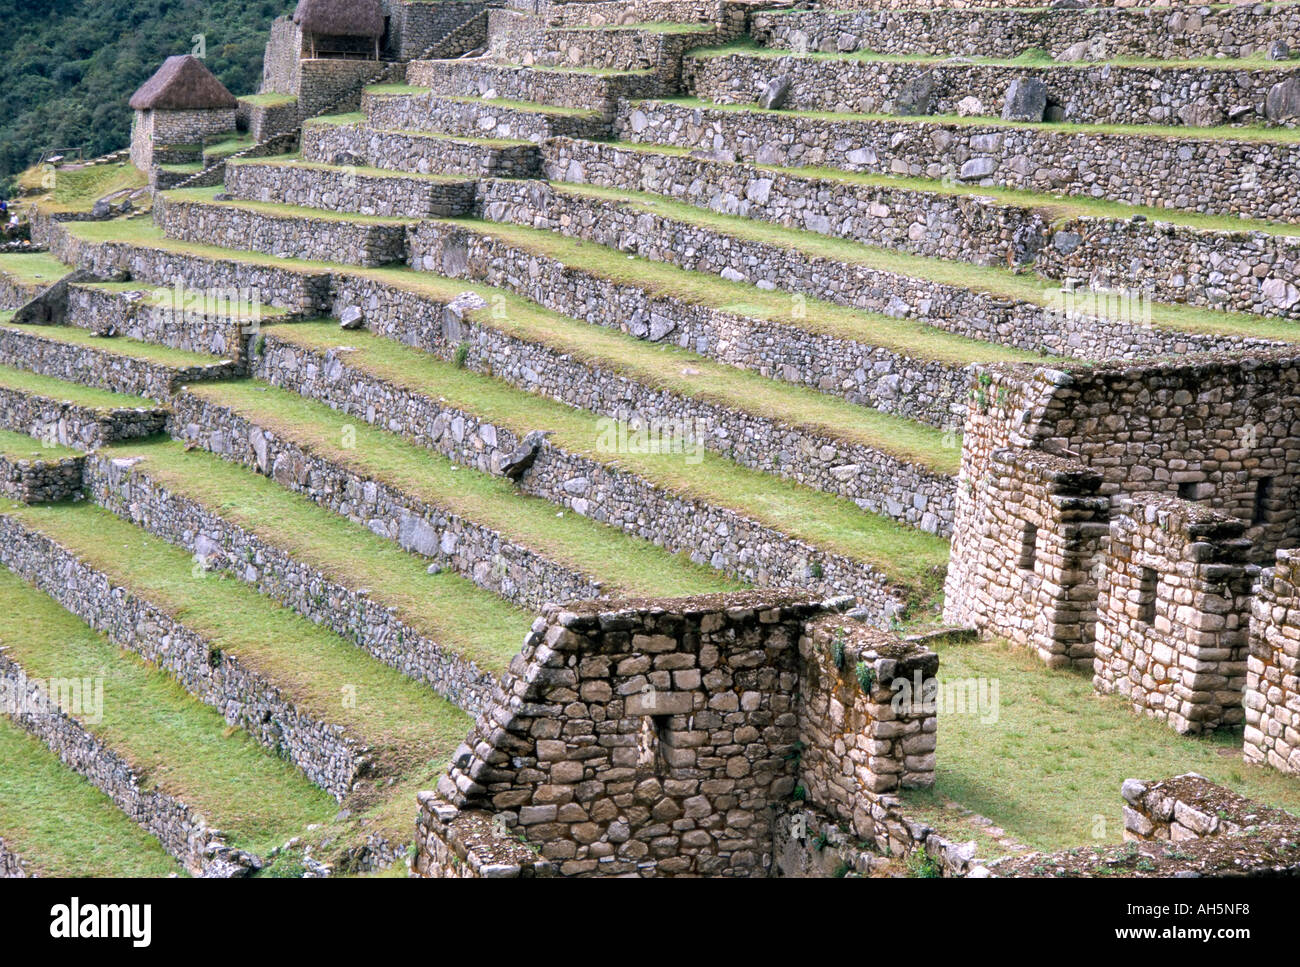 Agricultural terraces in ruins of Inca site Machu Picchu UNESCO World Heritage Site Peru South America Stock Photo